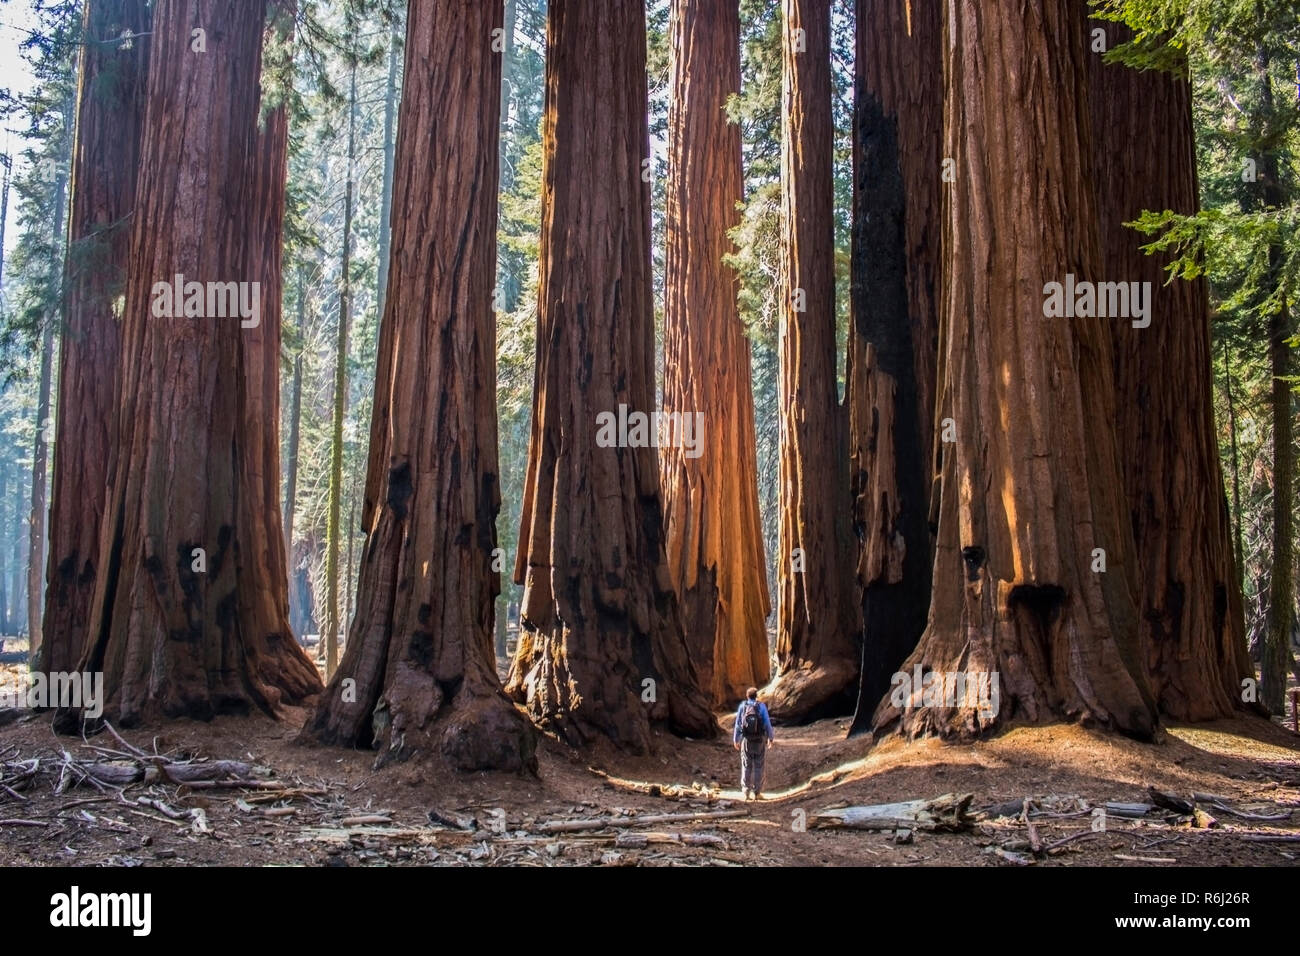 Mann an der hoch aufragenden riesigen Redwood Grove von gigantischen Sequoia Bäumen in der kalifornischen Sierra Nevada Wald suchen. Stockfoto